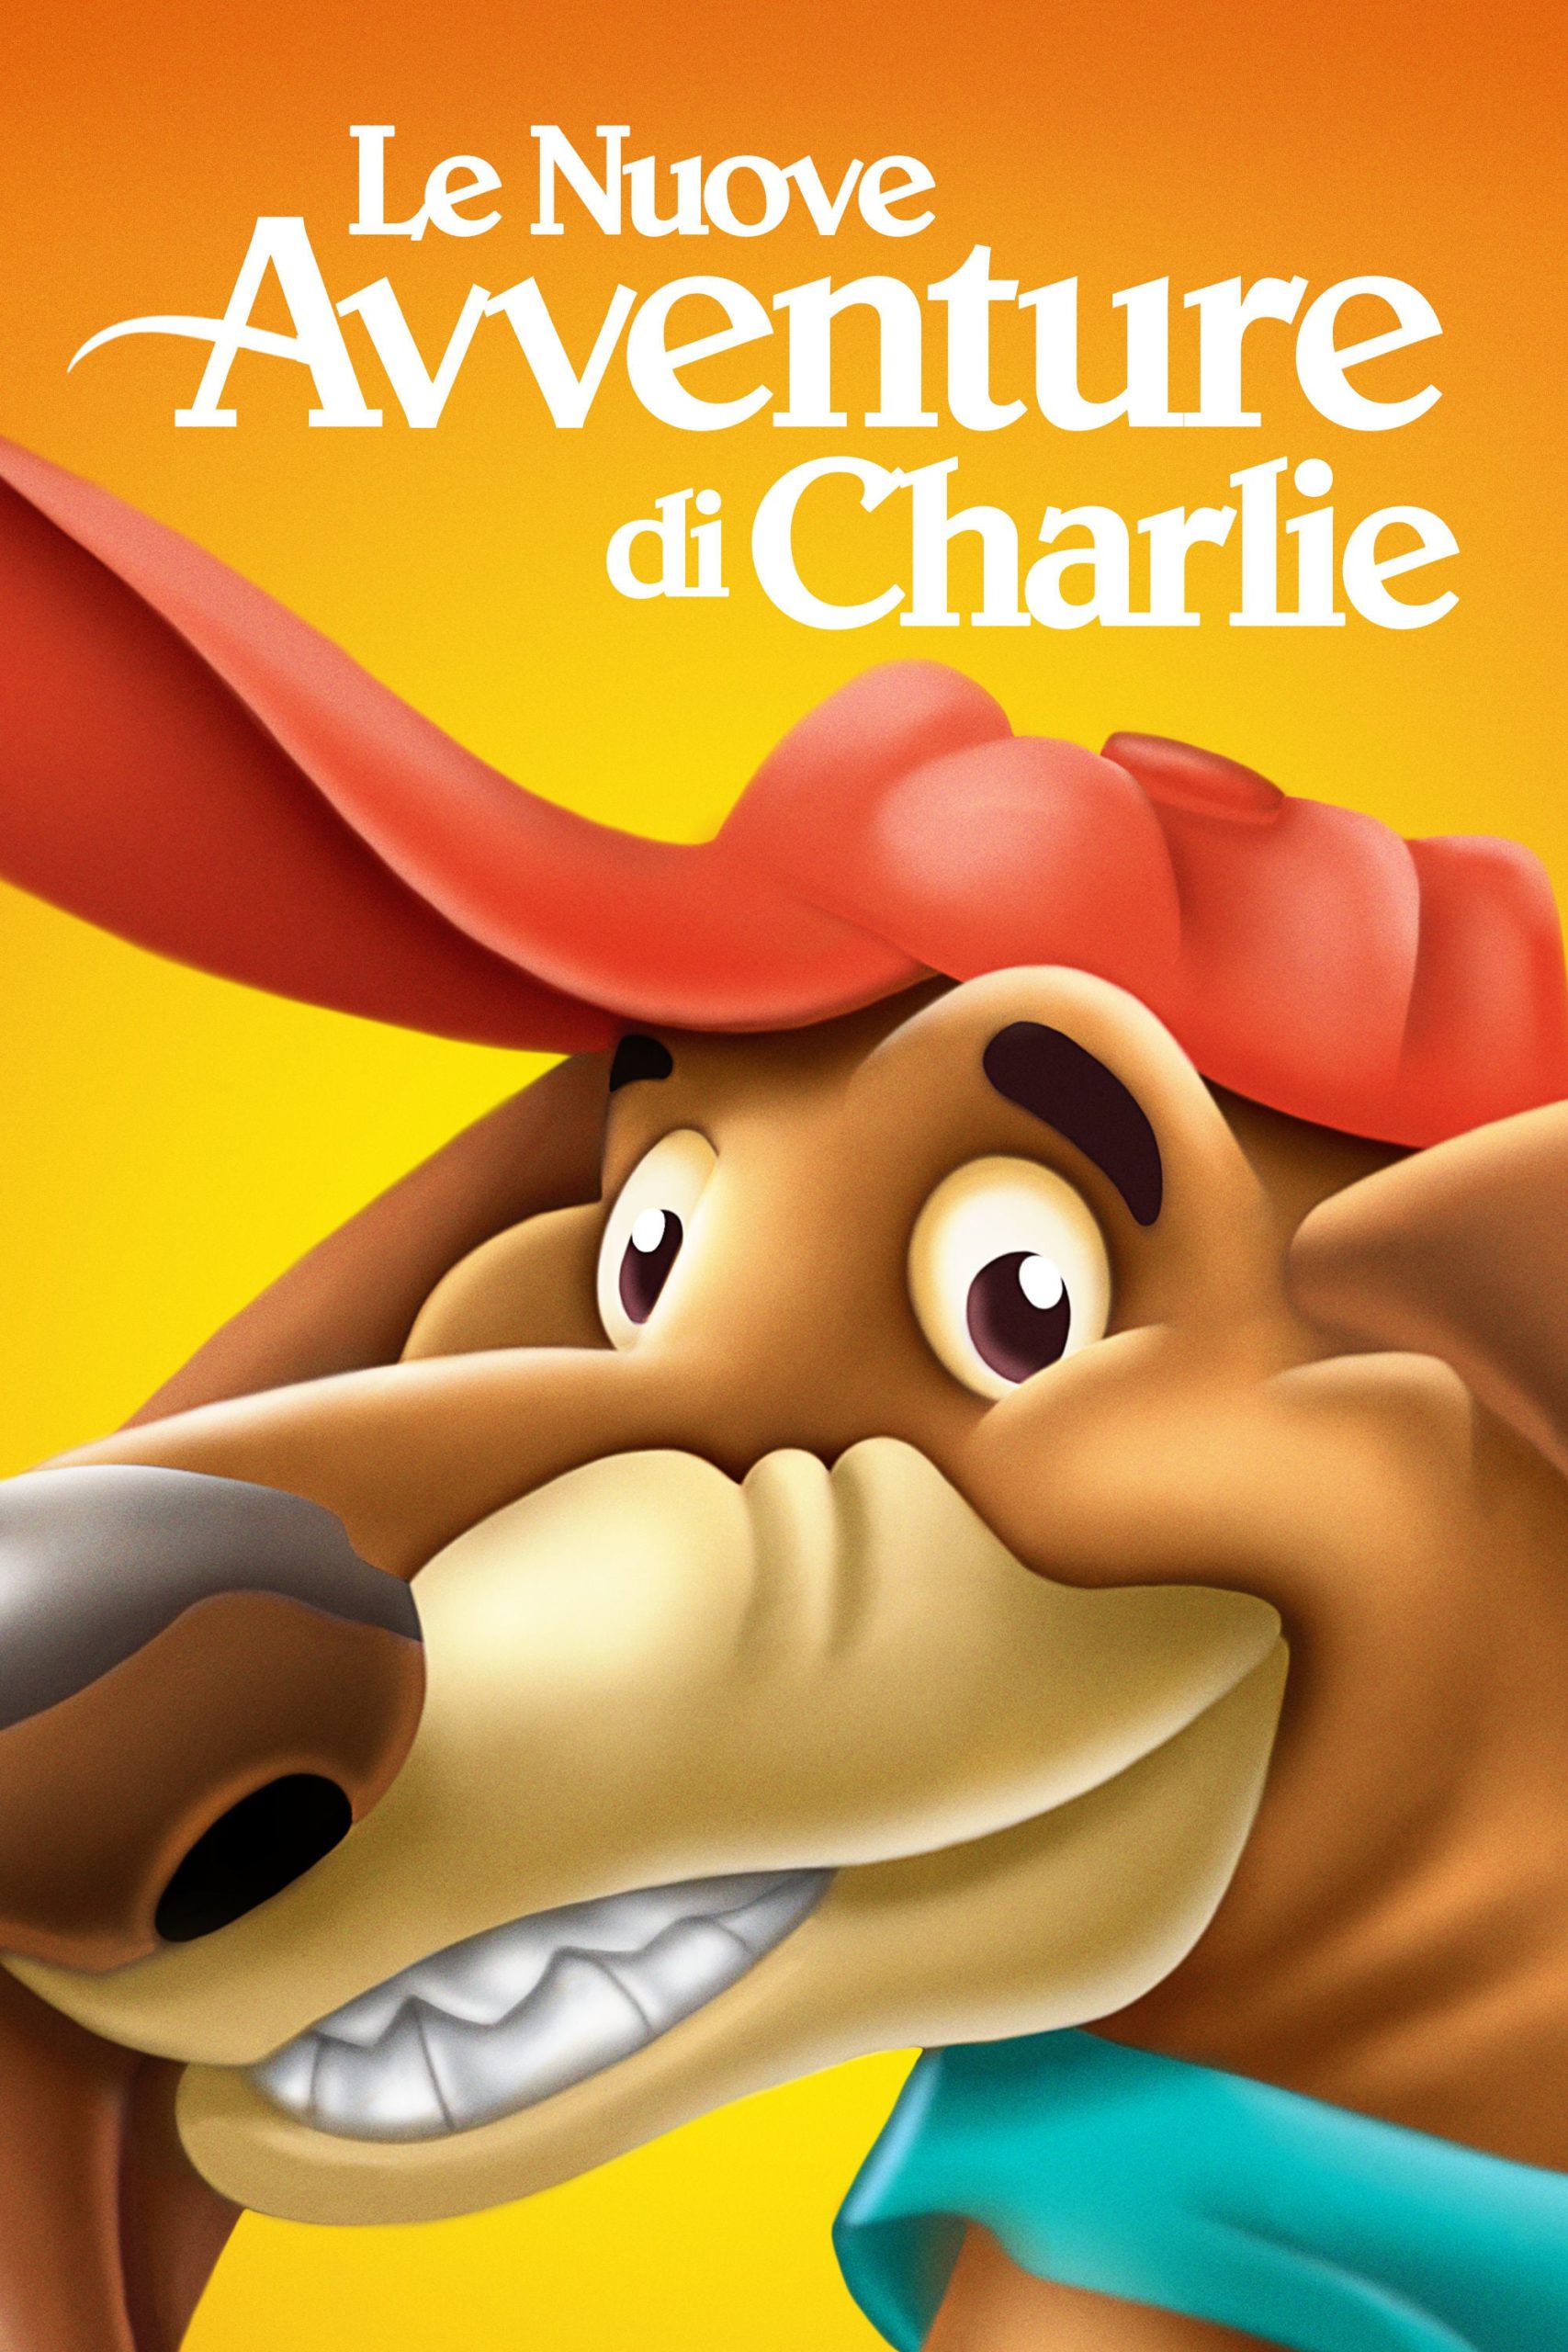 Le nuove avventure di Charlie [HD] (1996)